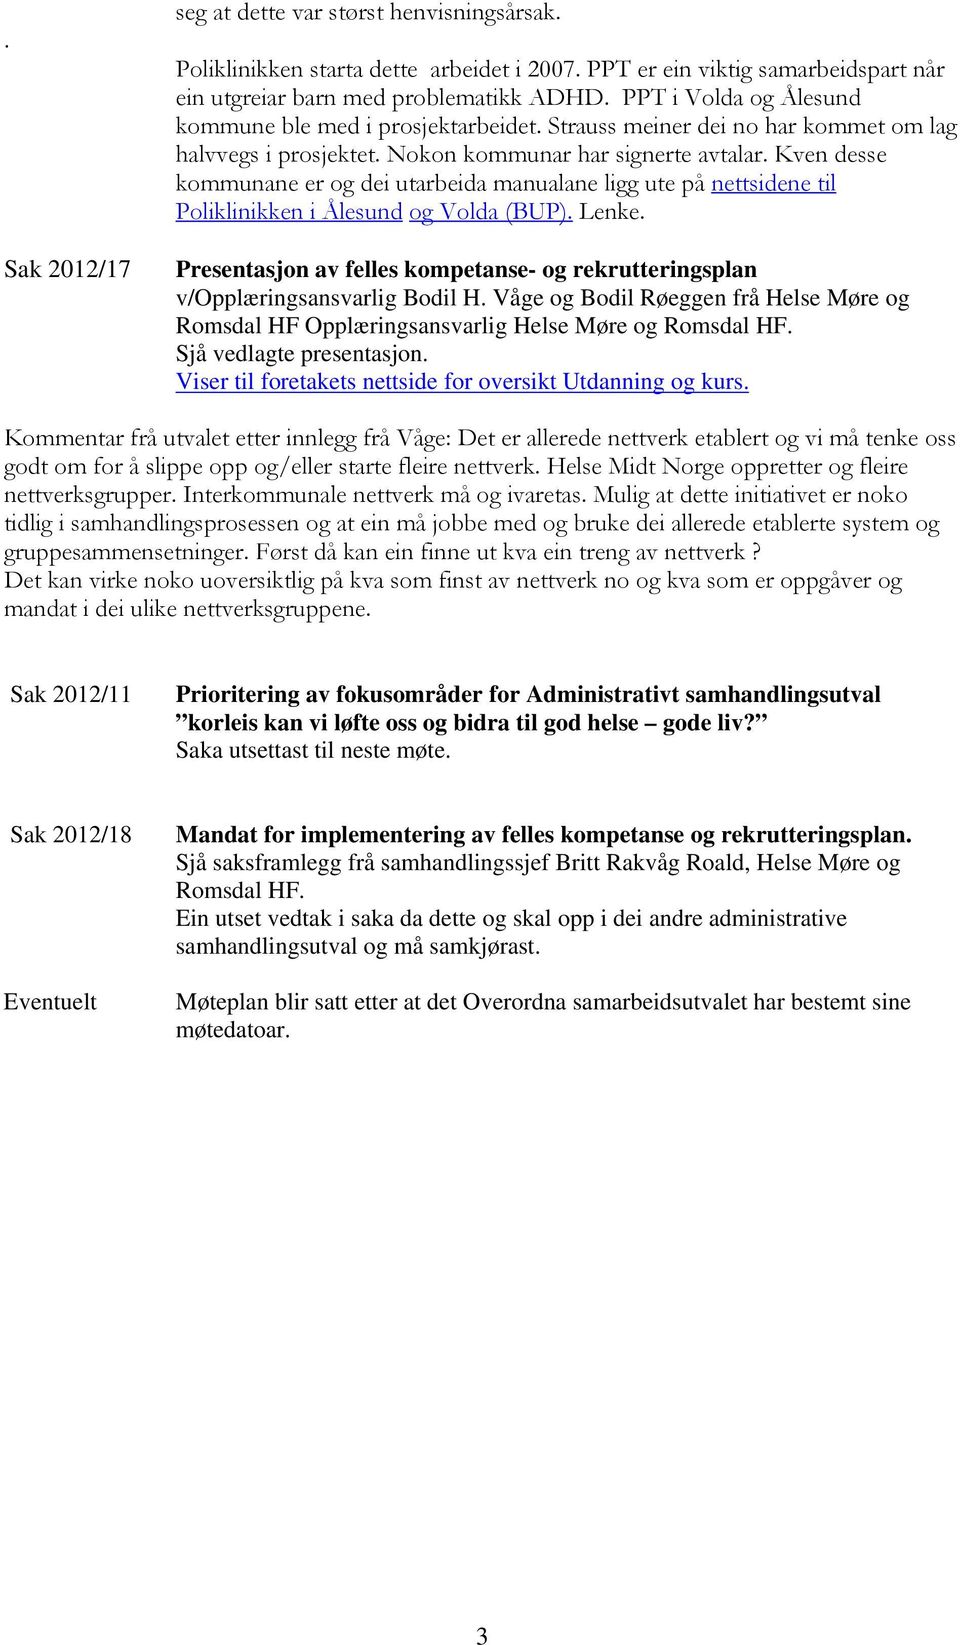 Kven desse kmmunane er g dei utarbeida manualane ligg ute på nettsidene til Pliklinikken i Ålesund g Vlda (BUP). Lenke.